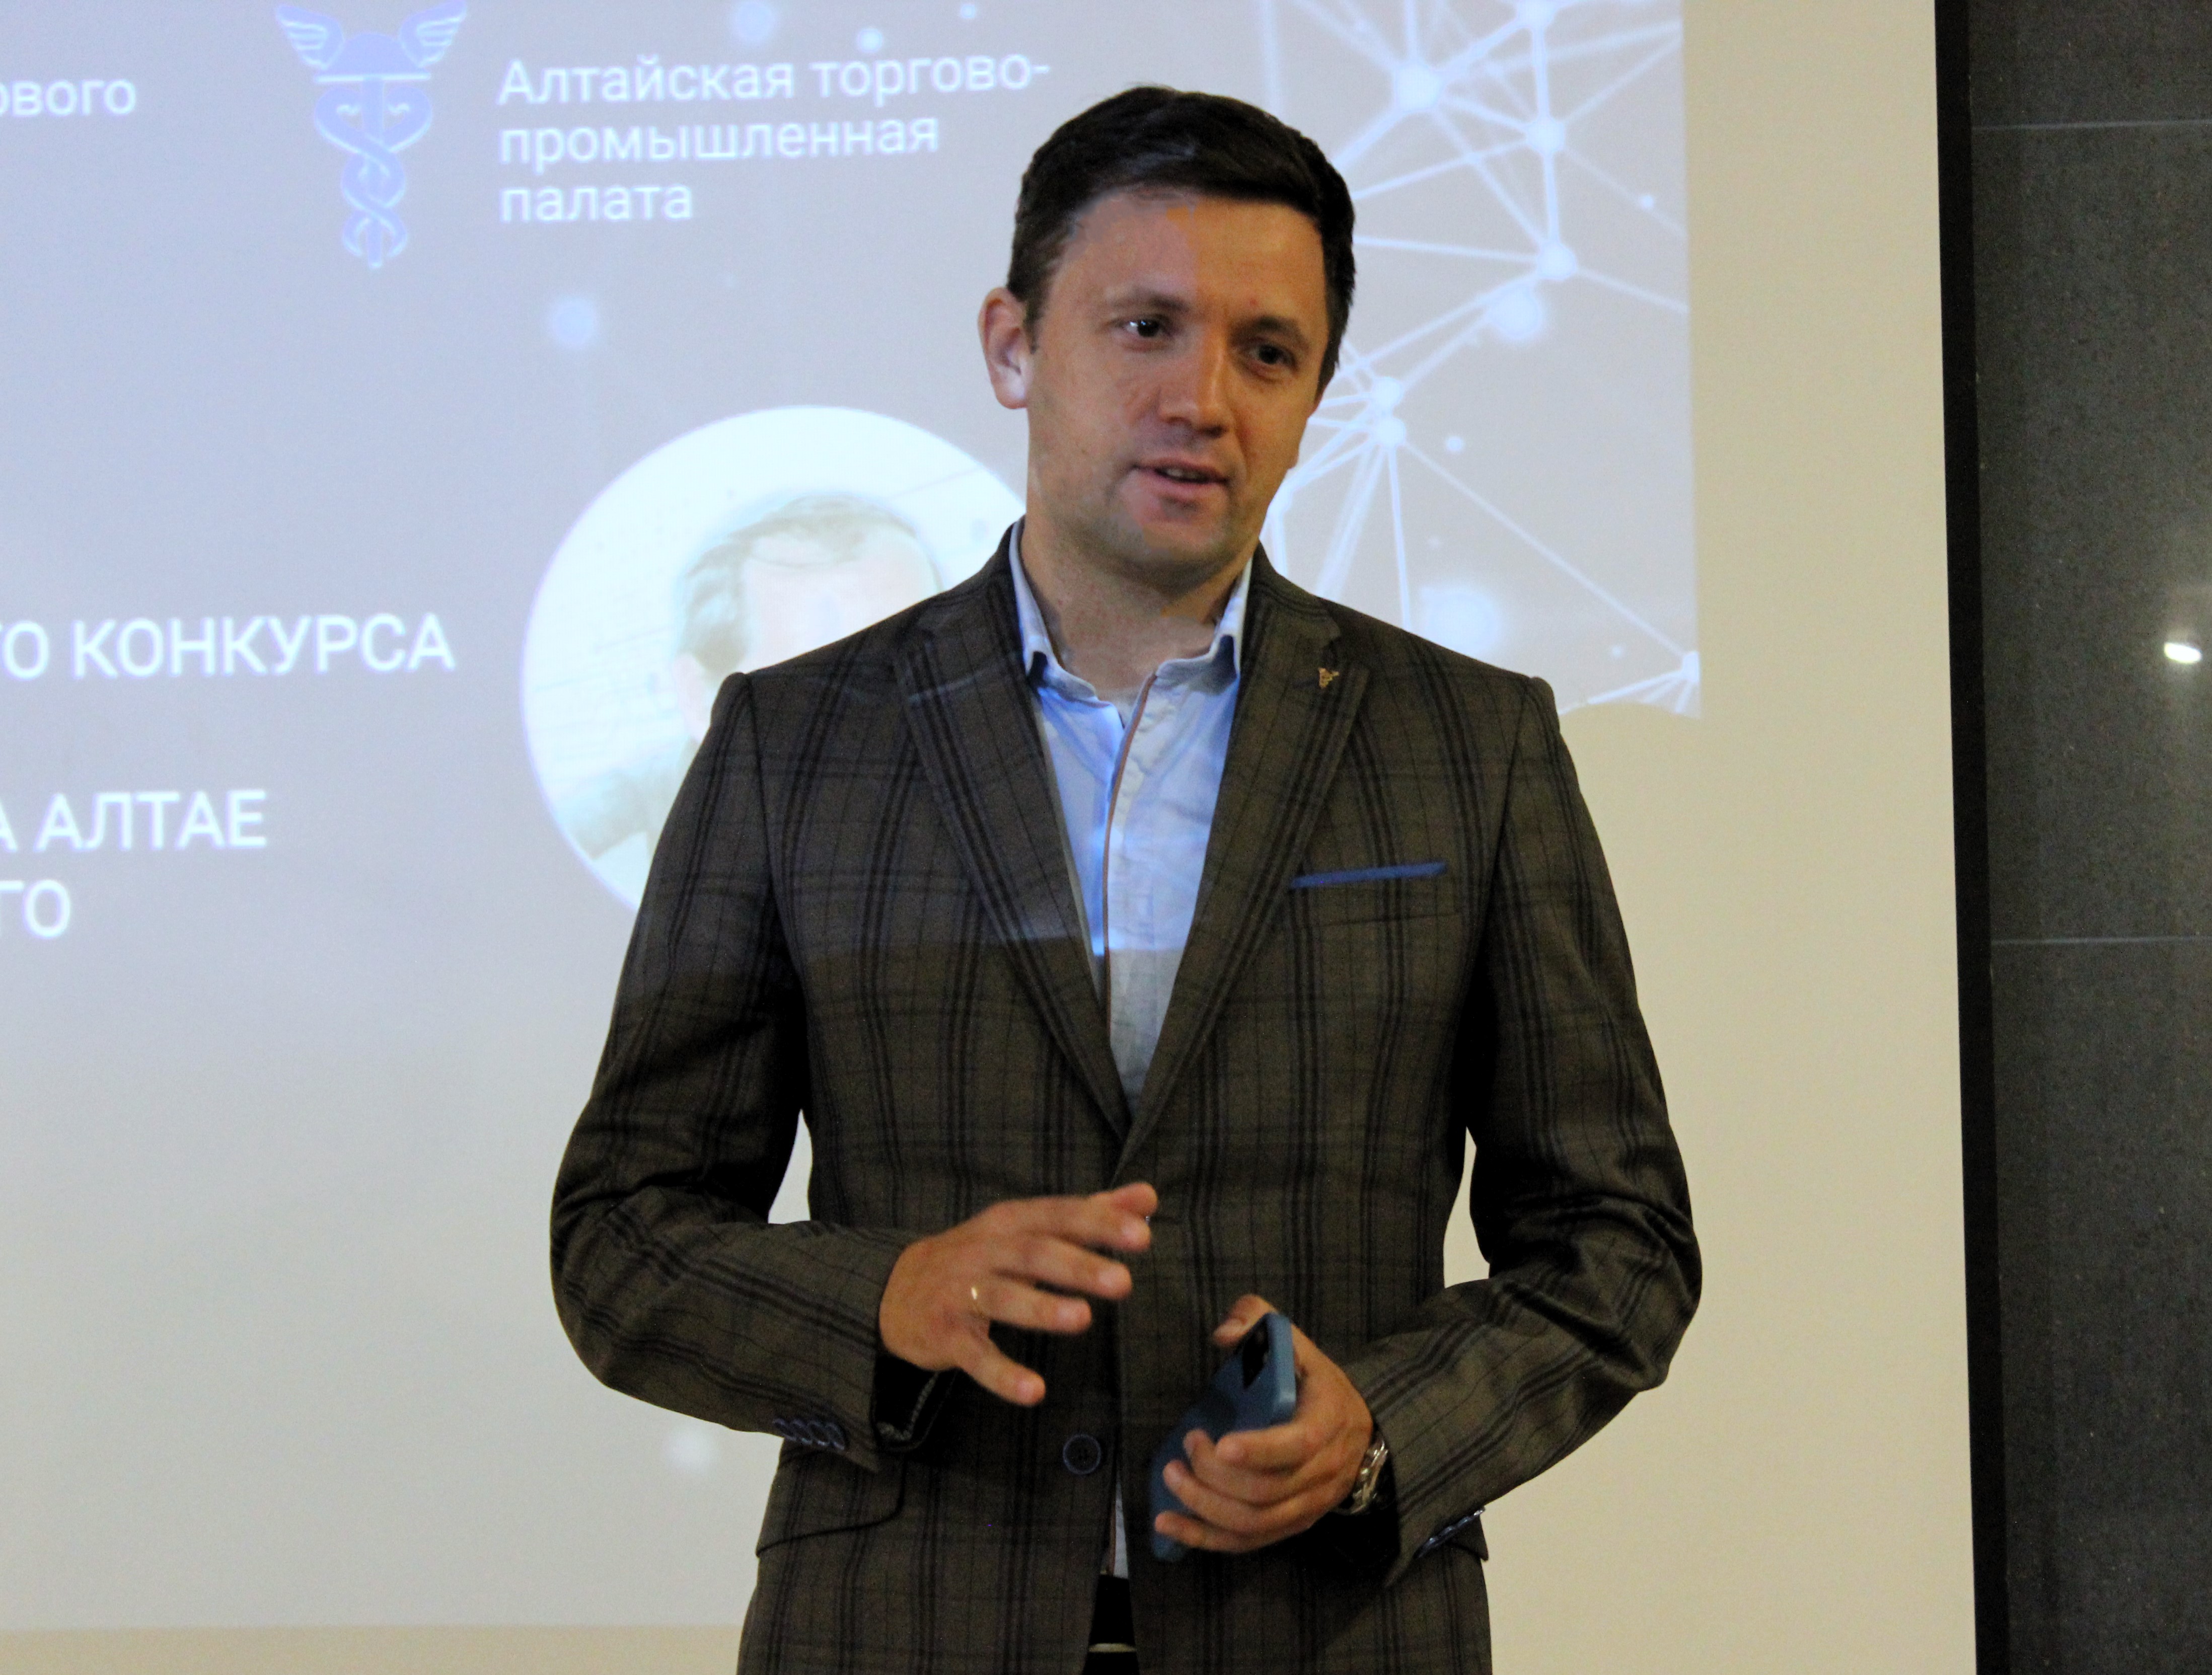 Павел Плетнев, председатель Комитета ТПП Алтайского края по информационным технологиям